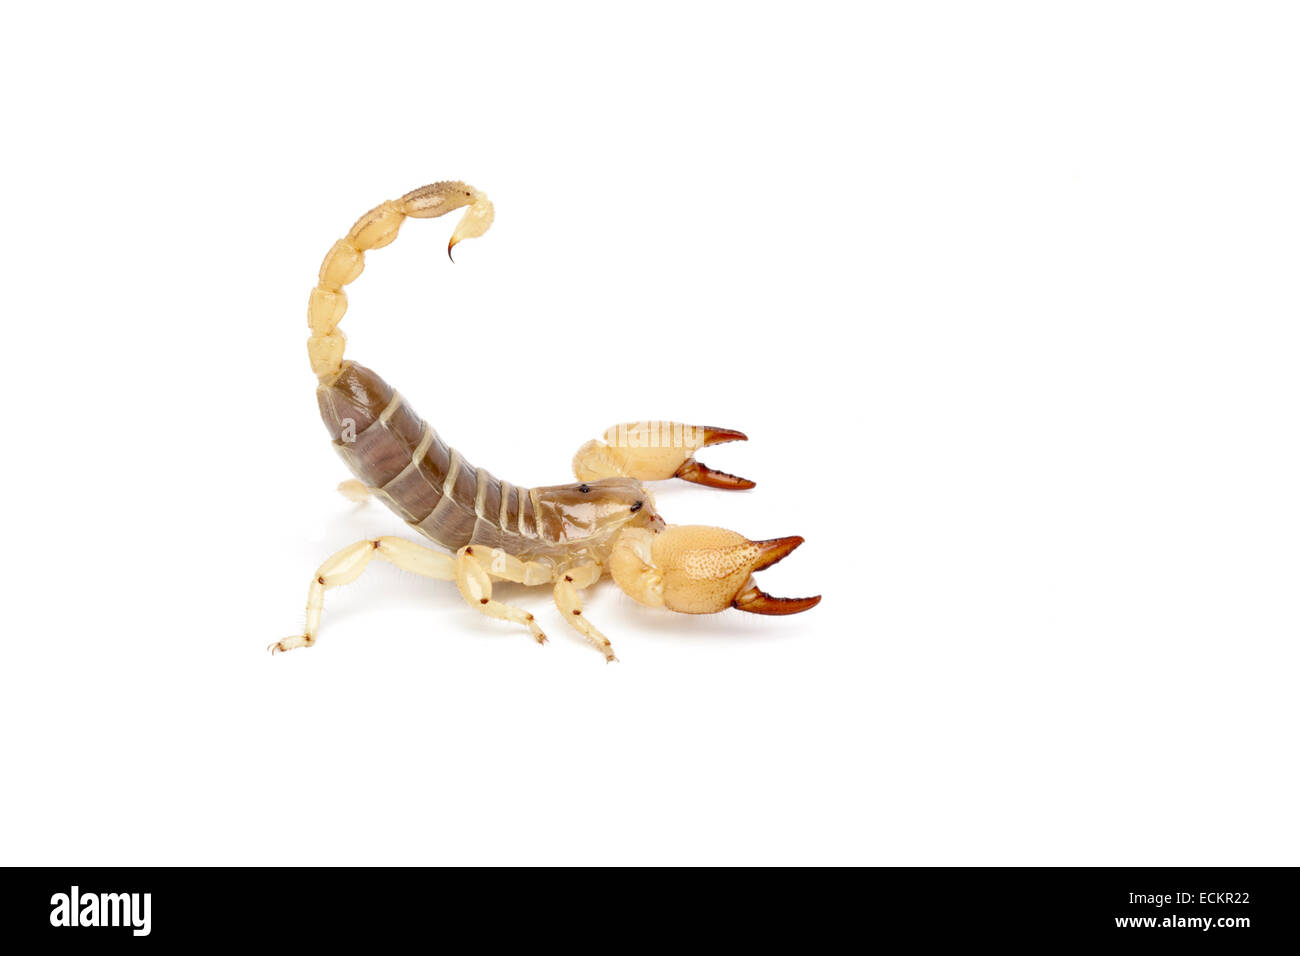 Scorpio maurus, scorpion d'or, d'Israël, sur fond blanc Banque D'Images